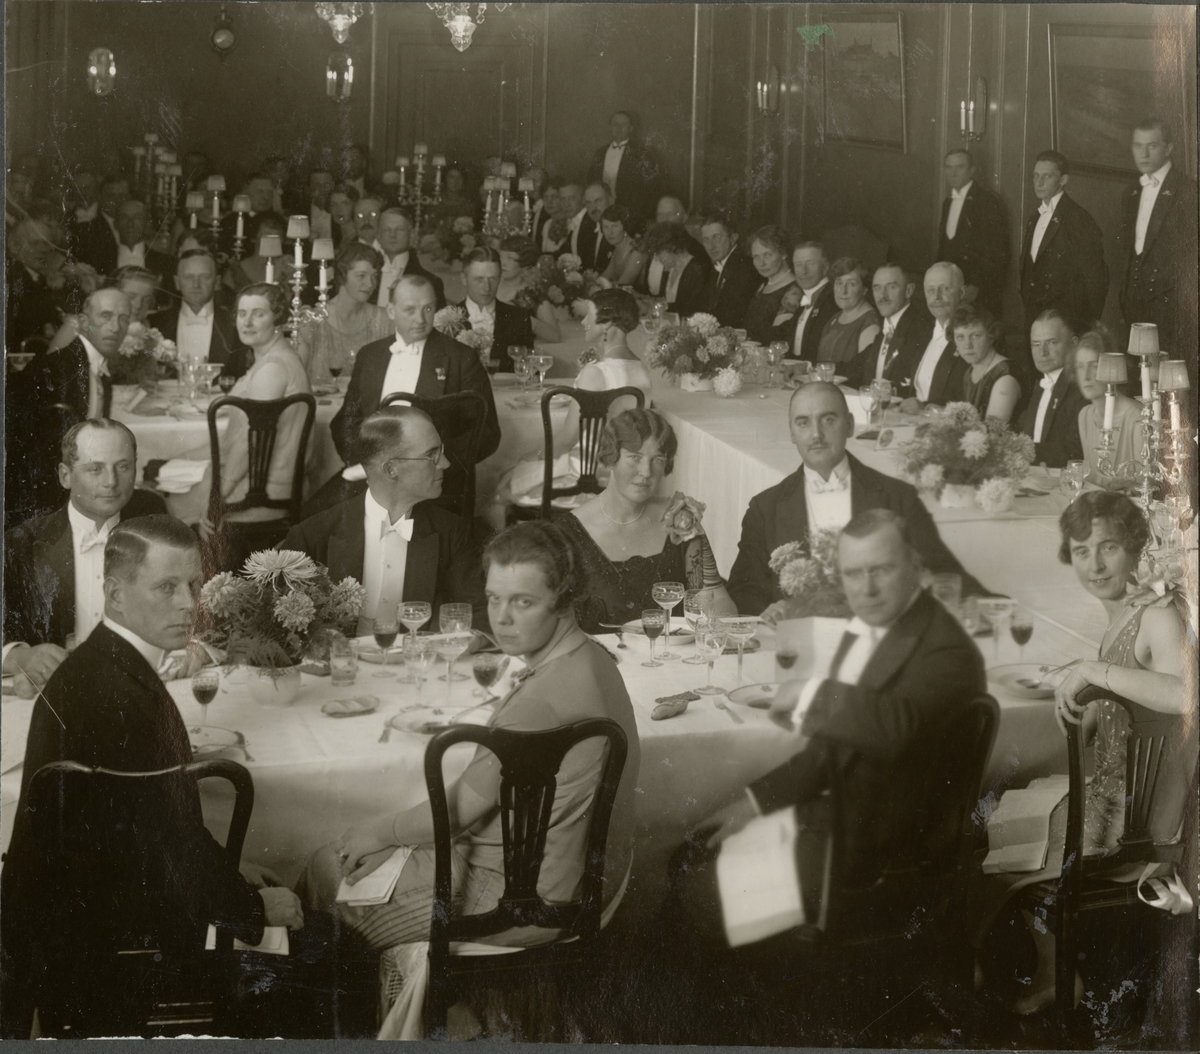 Bildtext: "Den 13. november 1926 tog officerskåren avsked av sitt avhållna chefspar; översten Fredrik Wilhelm Löwenborg och hans överstinna fru Ewa Löwenborg f. Treschow. Högtidstalet - sant tolkande allas känslor - hölls av major Klingberg. Grand Hotel Royal."